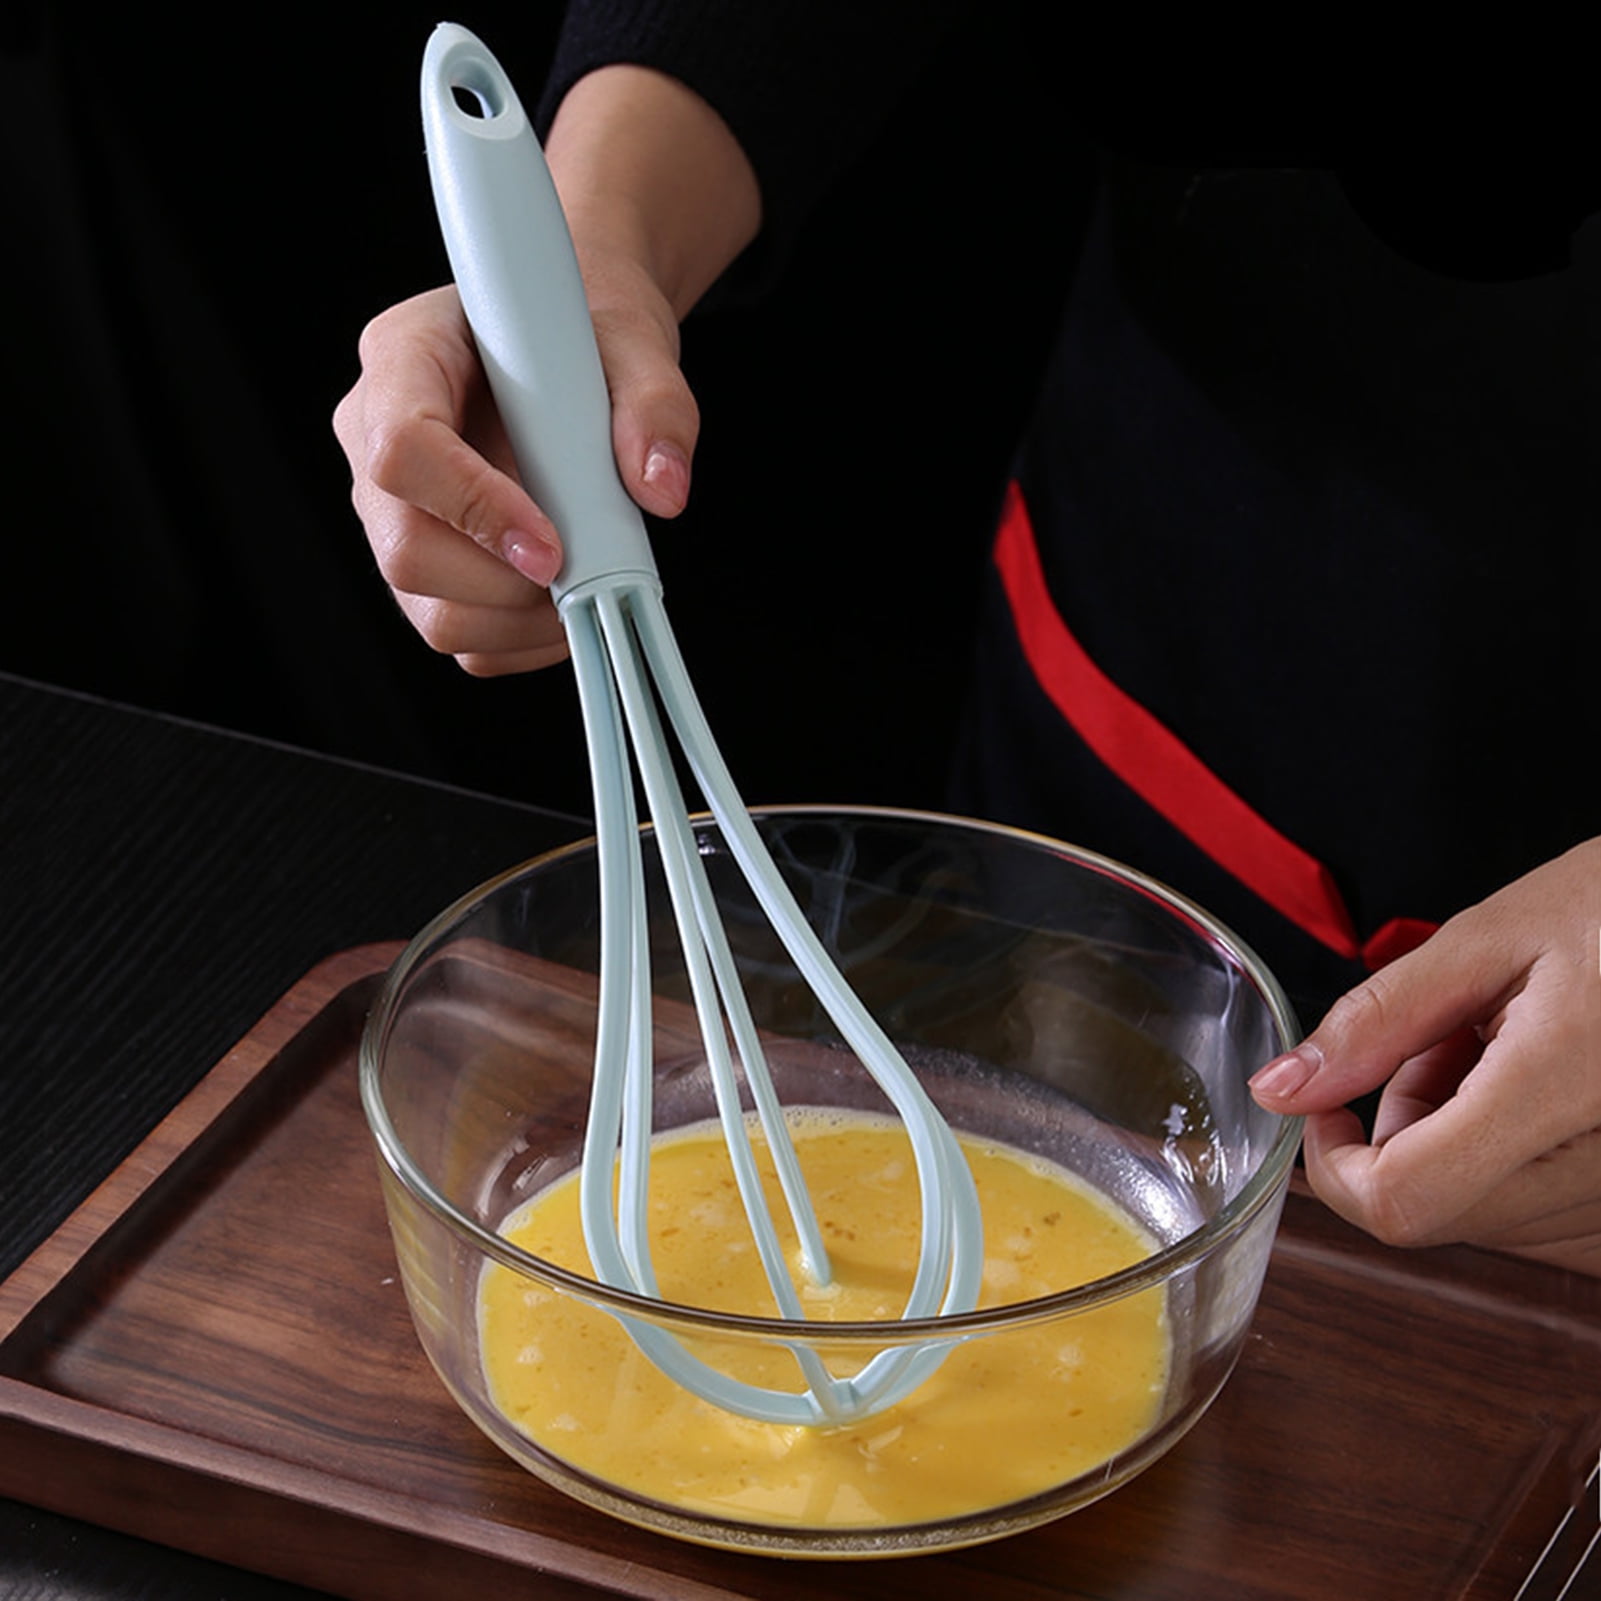  Whisk, Cake Baking Mixing Tool Cream Manual Stir Bar